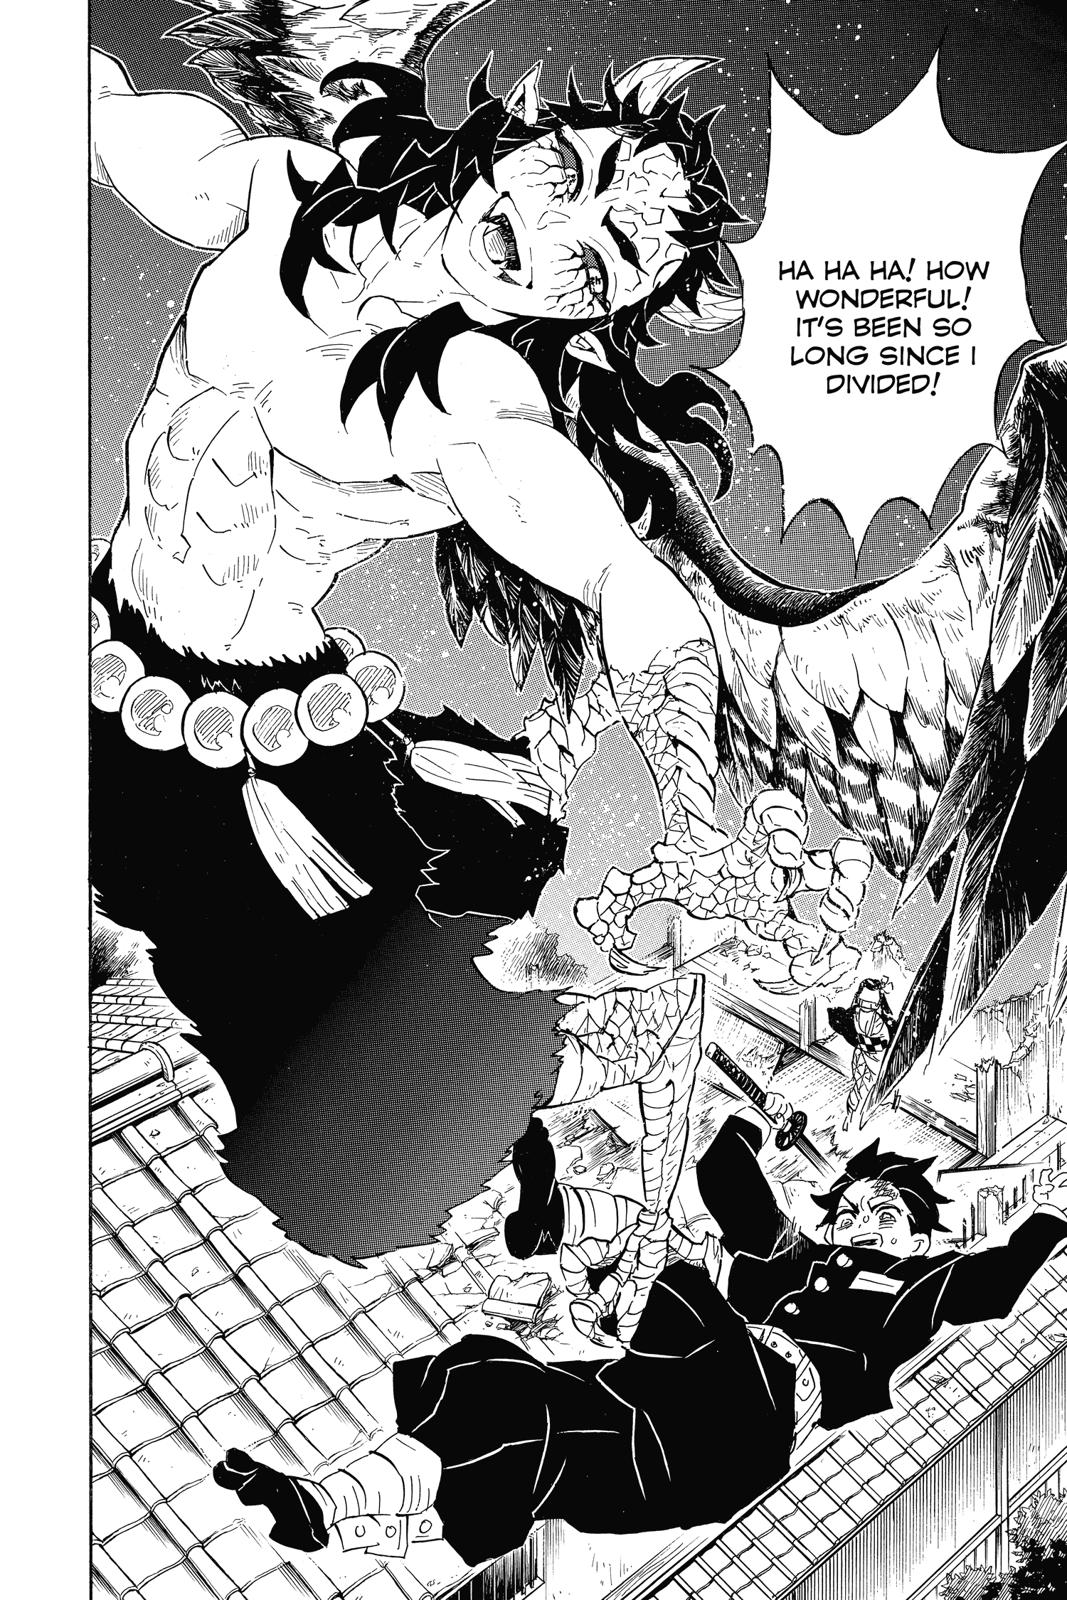 Demon Slayer Manga Manga Chapter - 107 - image 12